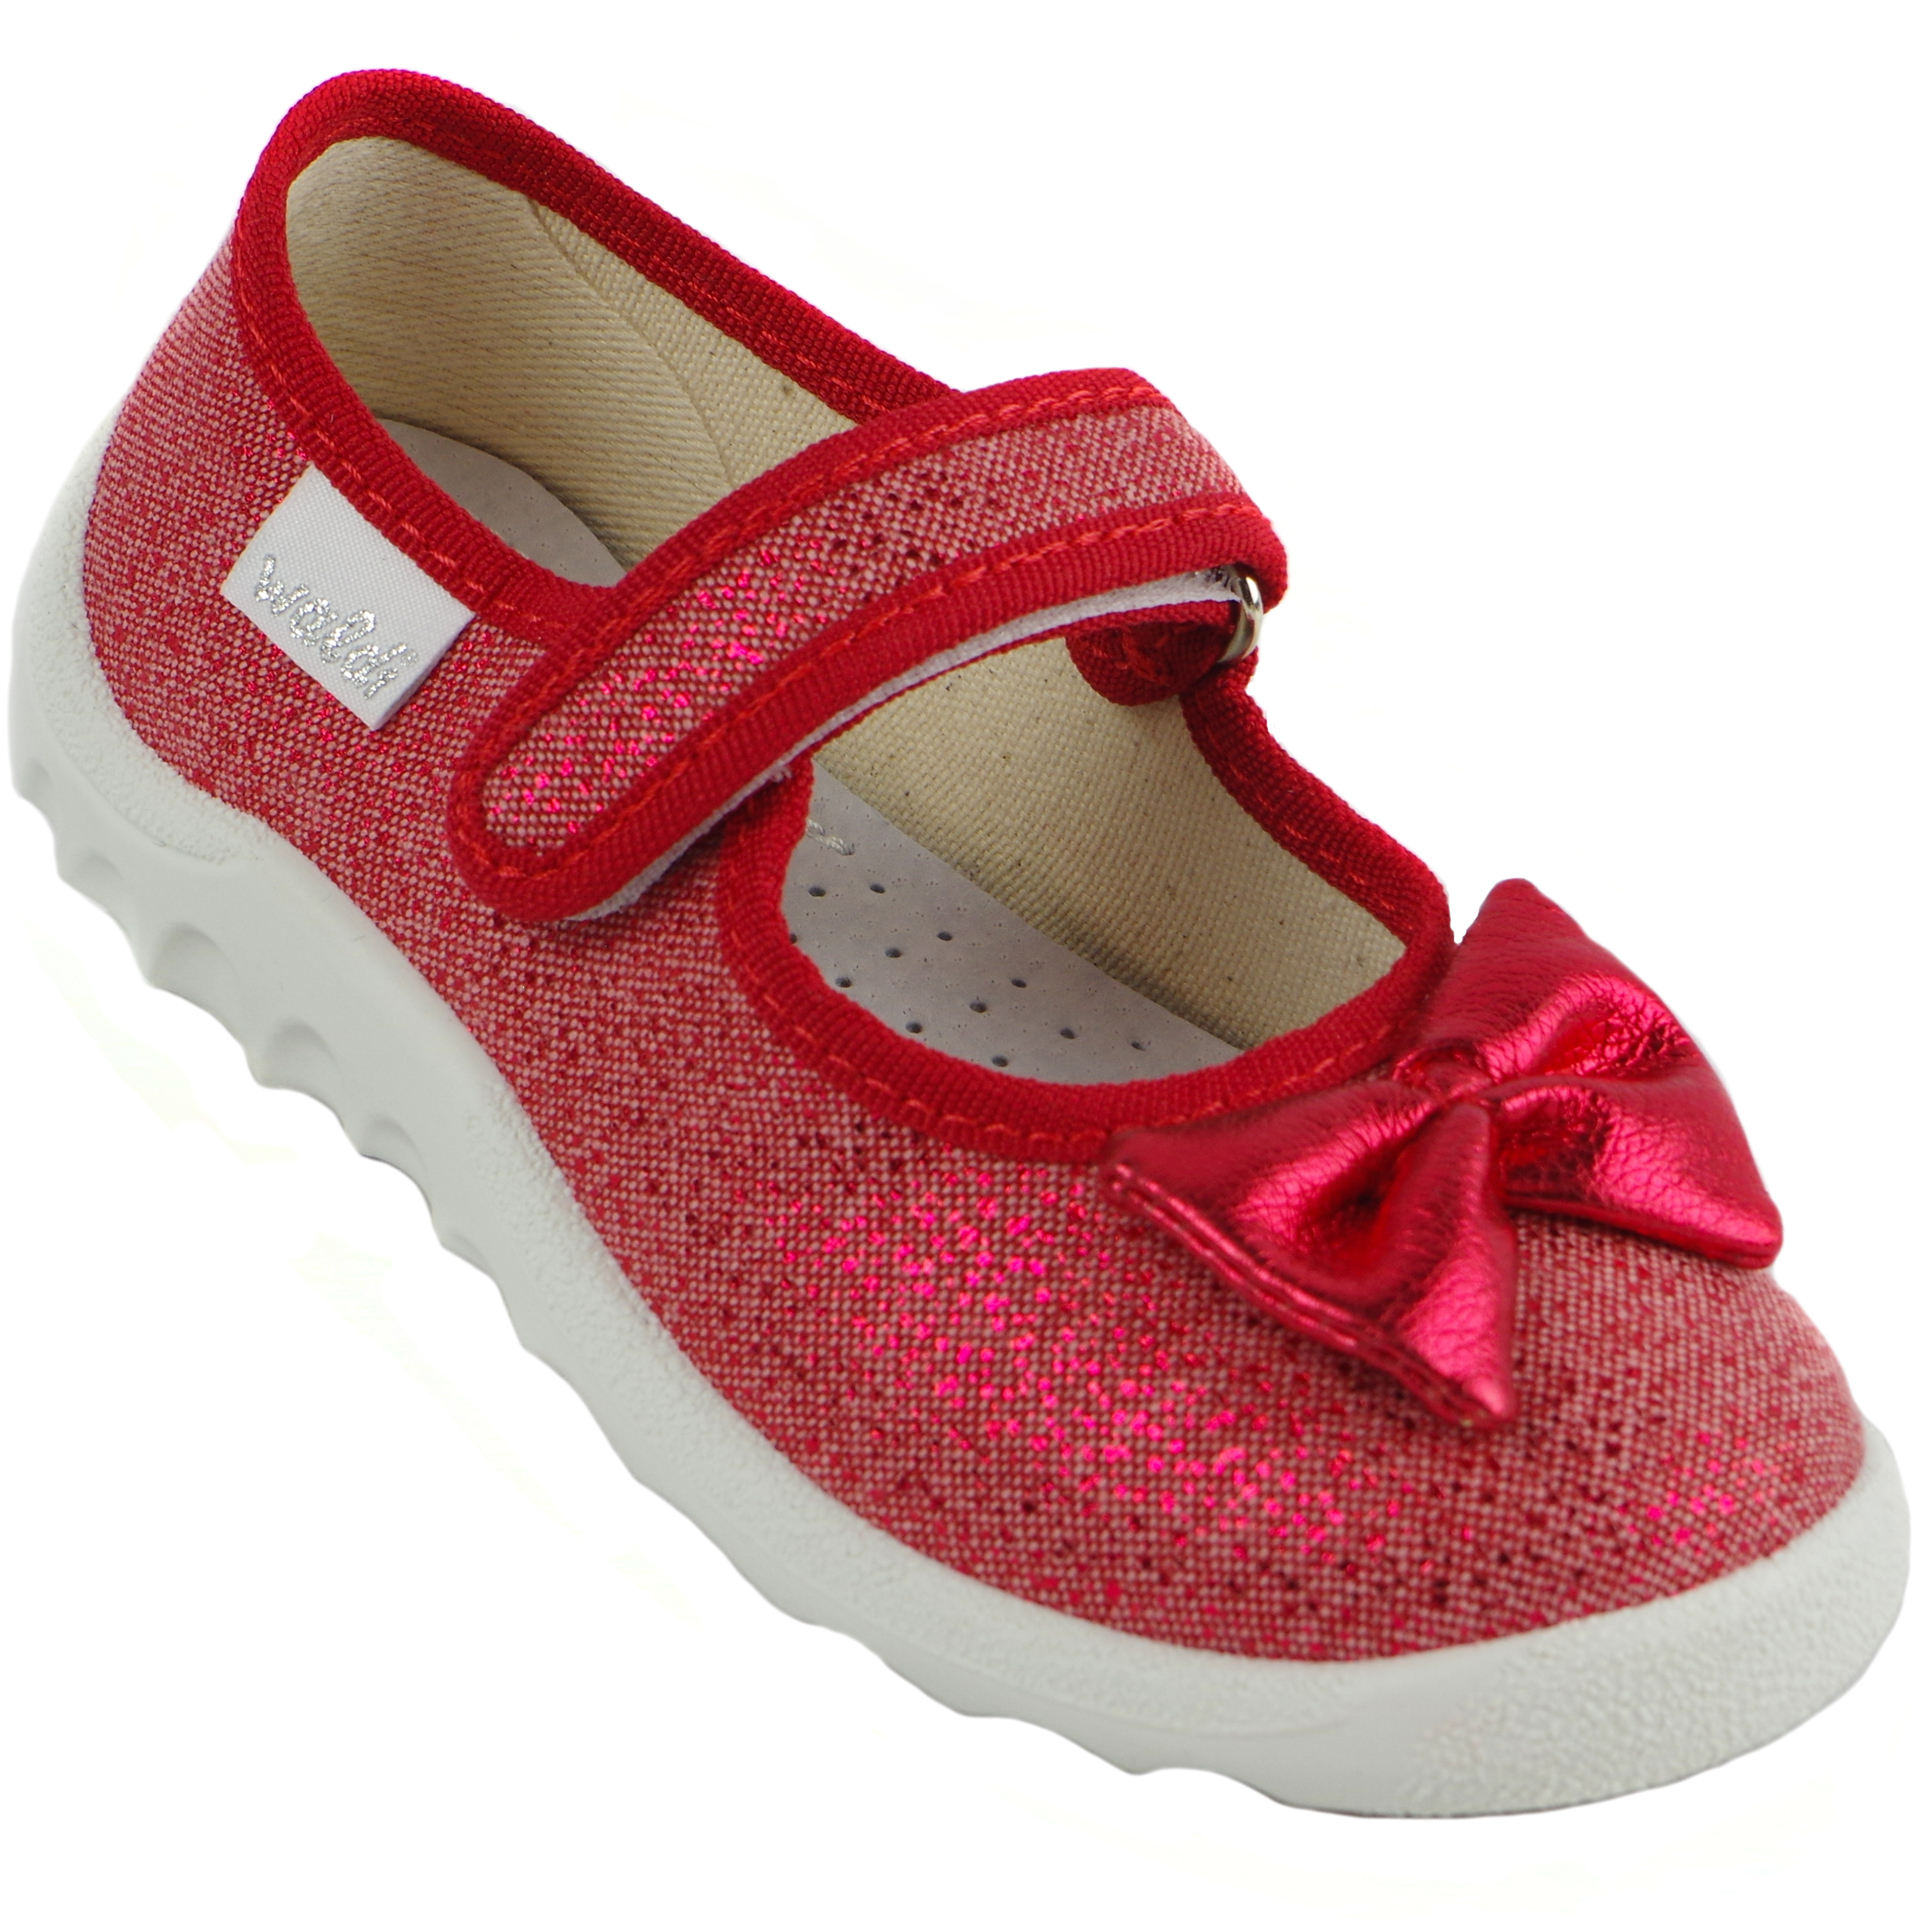 Текстильная обувь для девочек Тапочки Waldi (1407) цвет Красный 21-27 размеры – Sole Kids